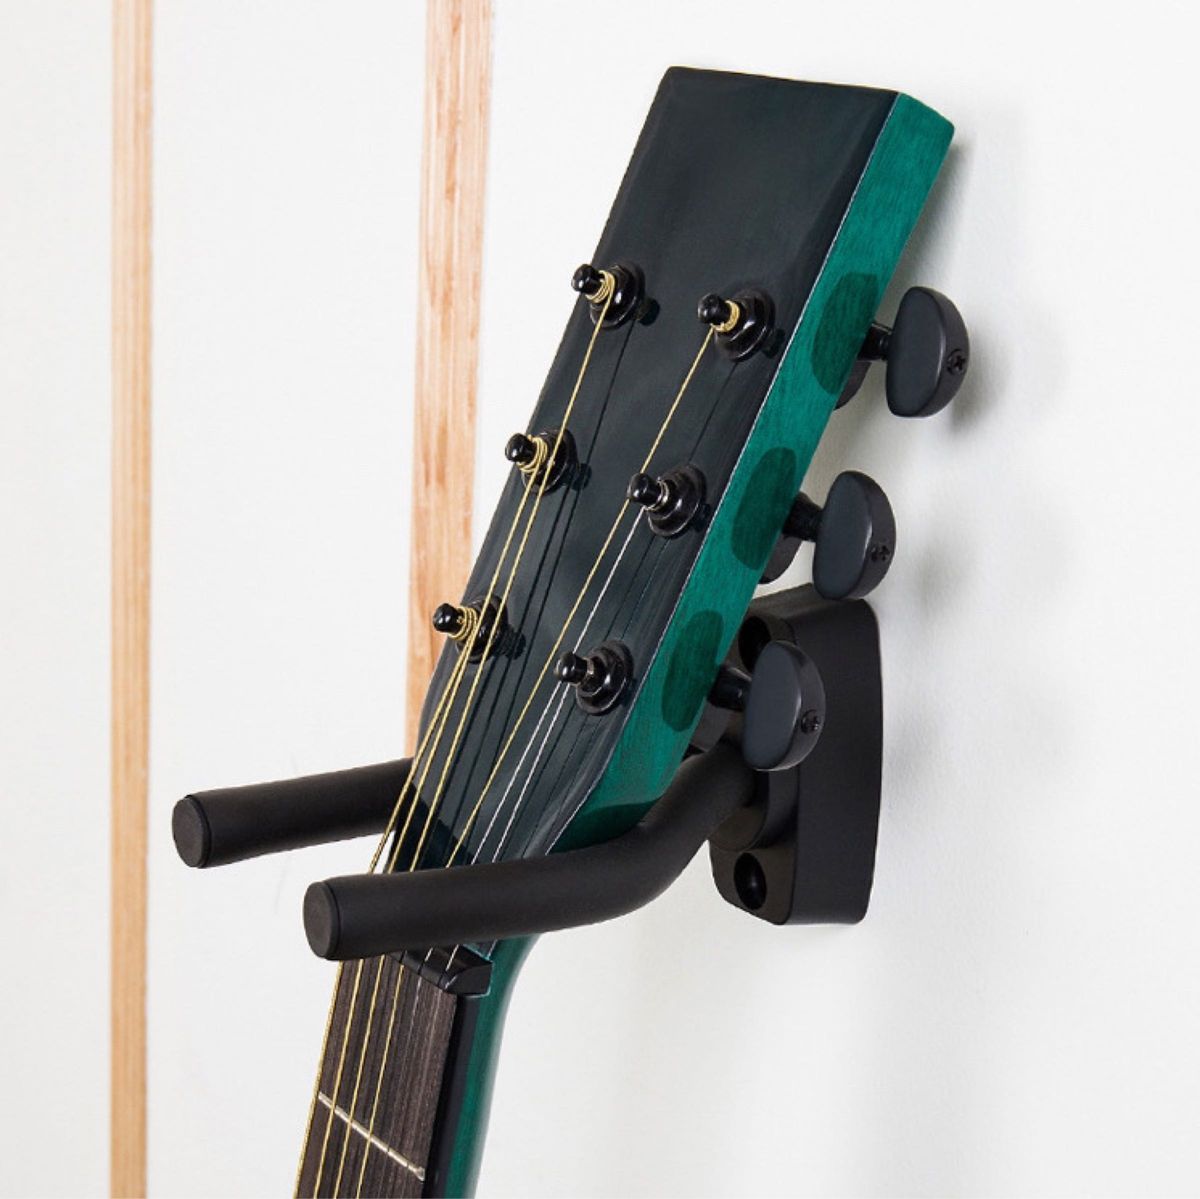 ギターハンガー ベース セット 天然木 木製 ホルダー 壁掛け フック 立て掛け